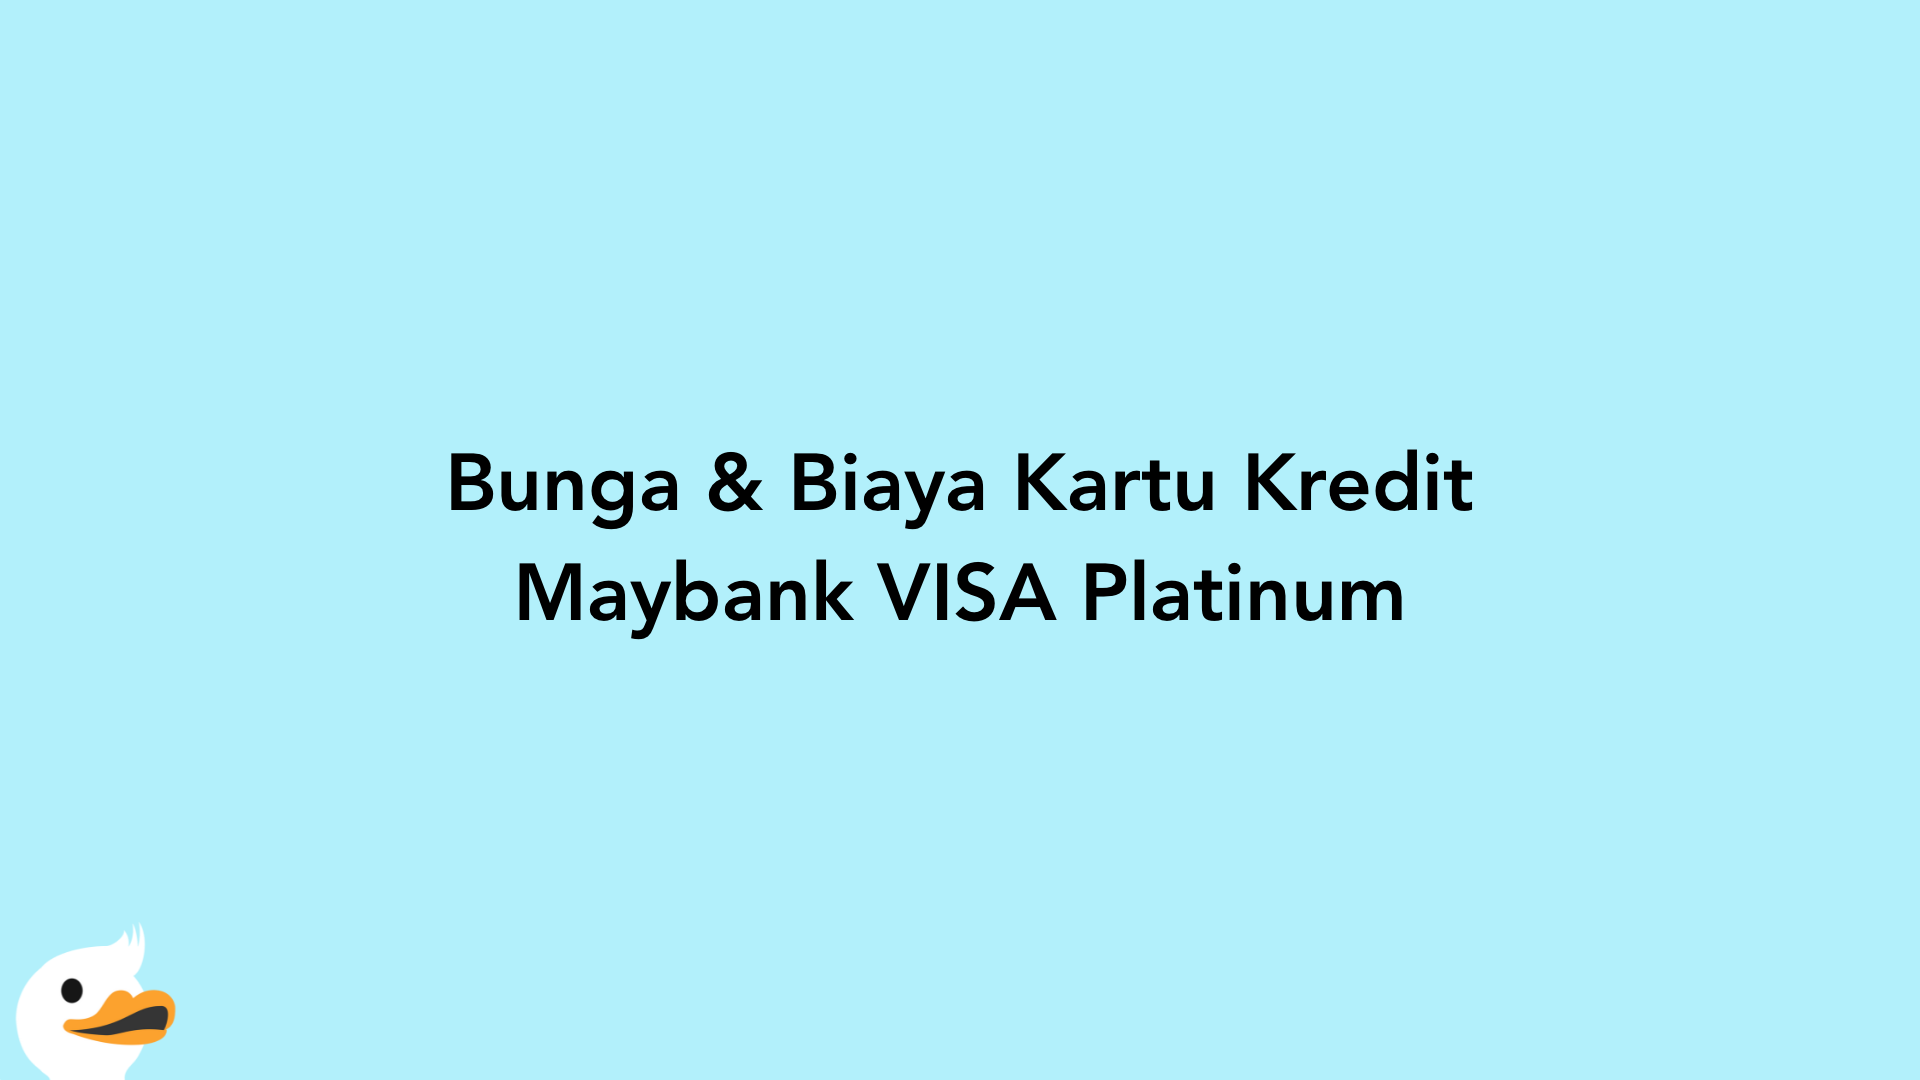 Bunga & Biaya Kartu Kredit Maybank VISA Platinum